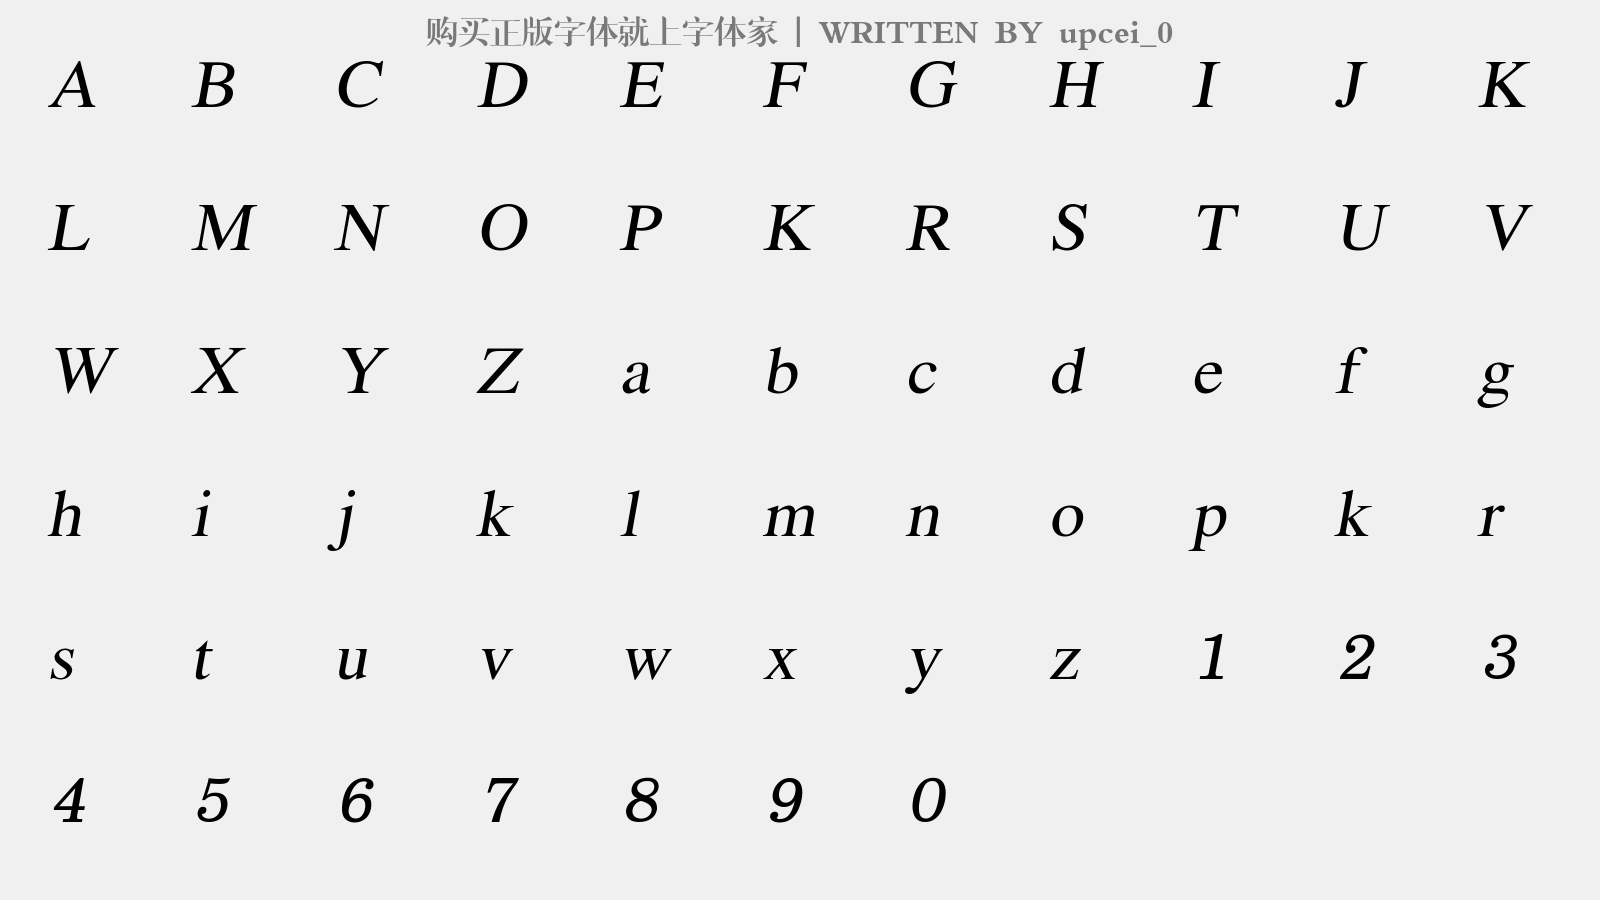 upcei_0 - 大写字母/小写字母/数字